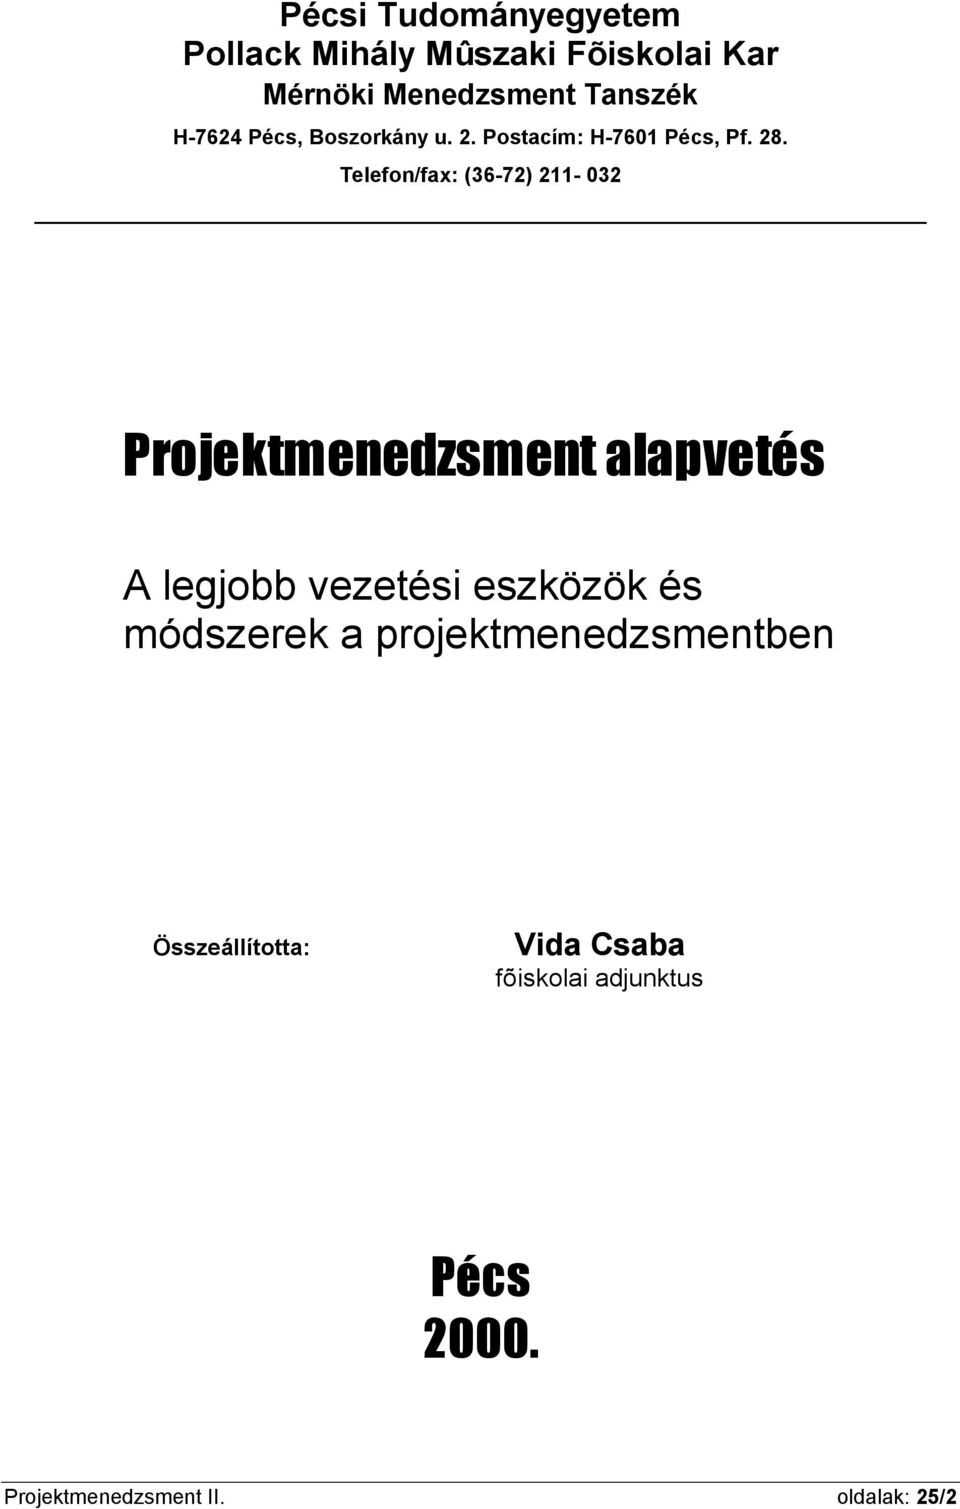 PÉCSI TUDOMÁNYEGYETEM POLLACK MIHÁLY MÛSZAKI FÕISKOLAI KAR. Vida Csaba.  PROJEKTMENEDZSMENT I. Alapvetés - PDF Free Download